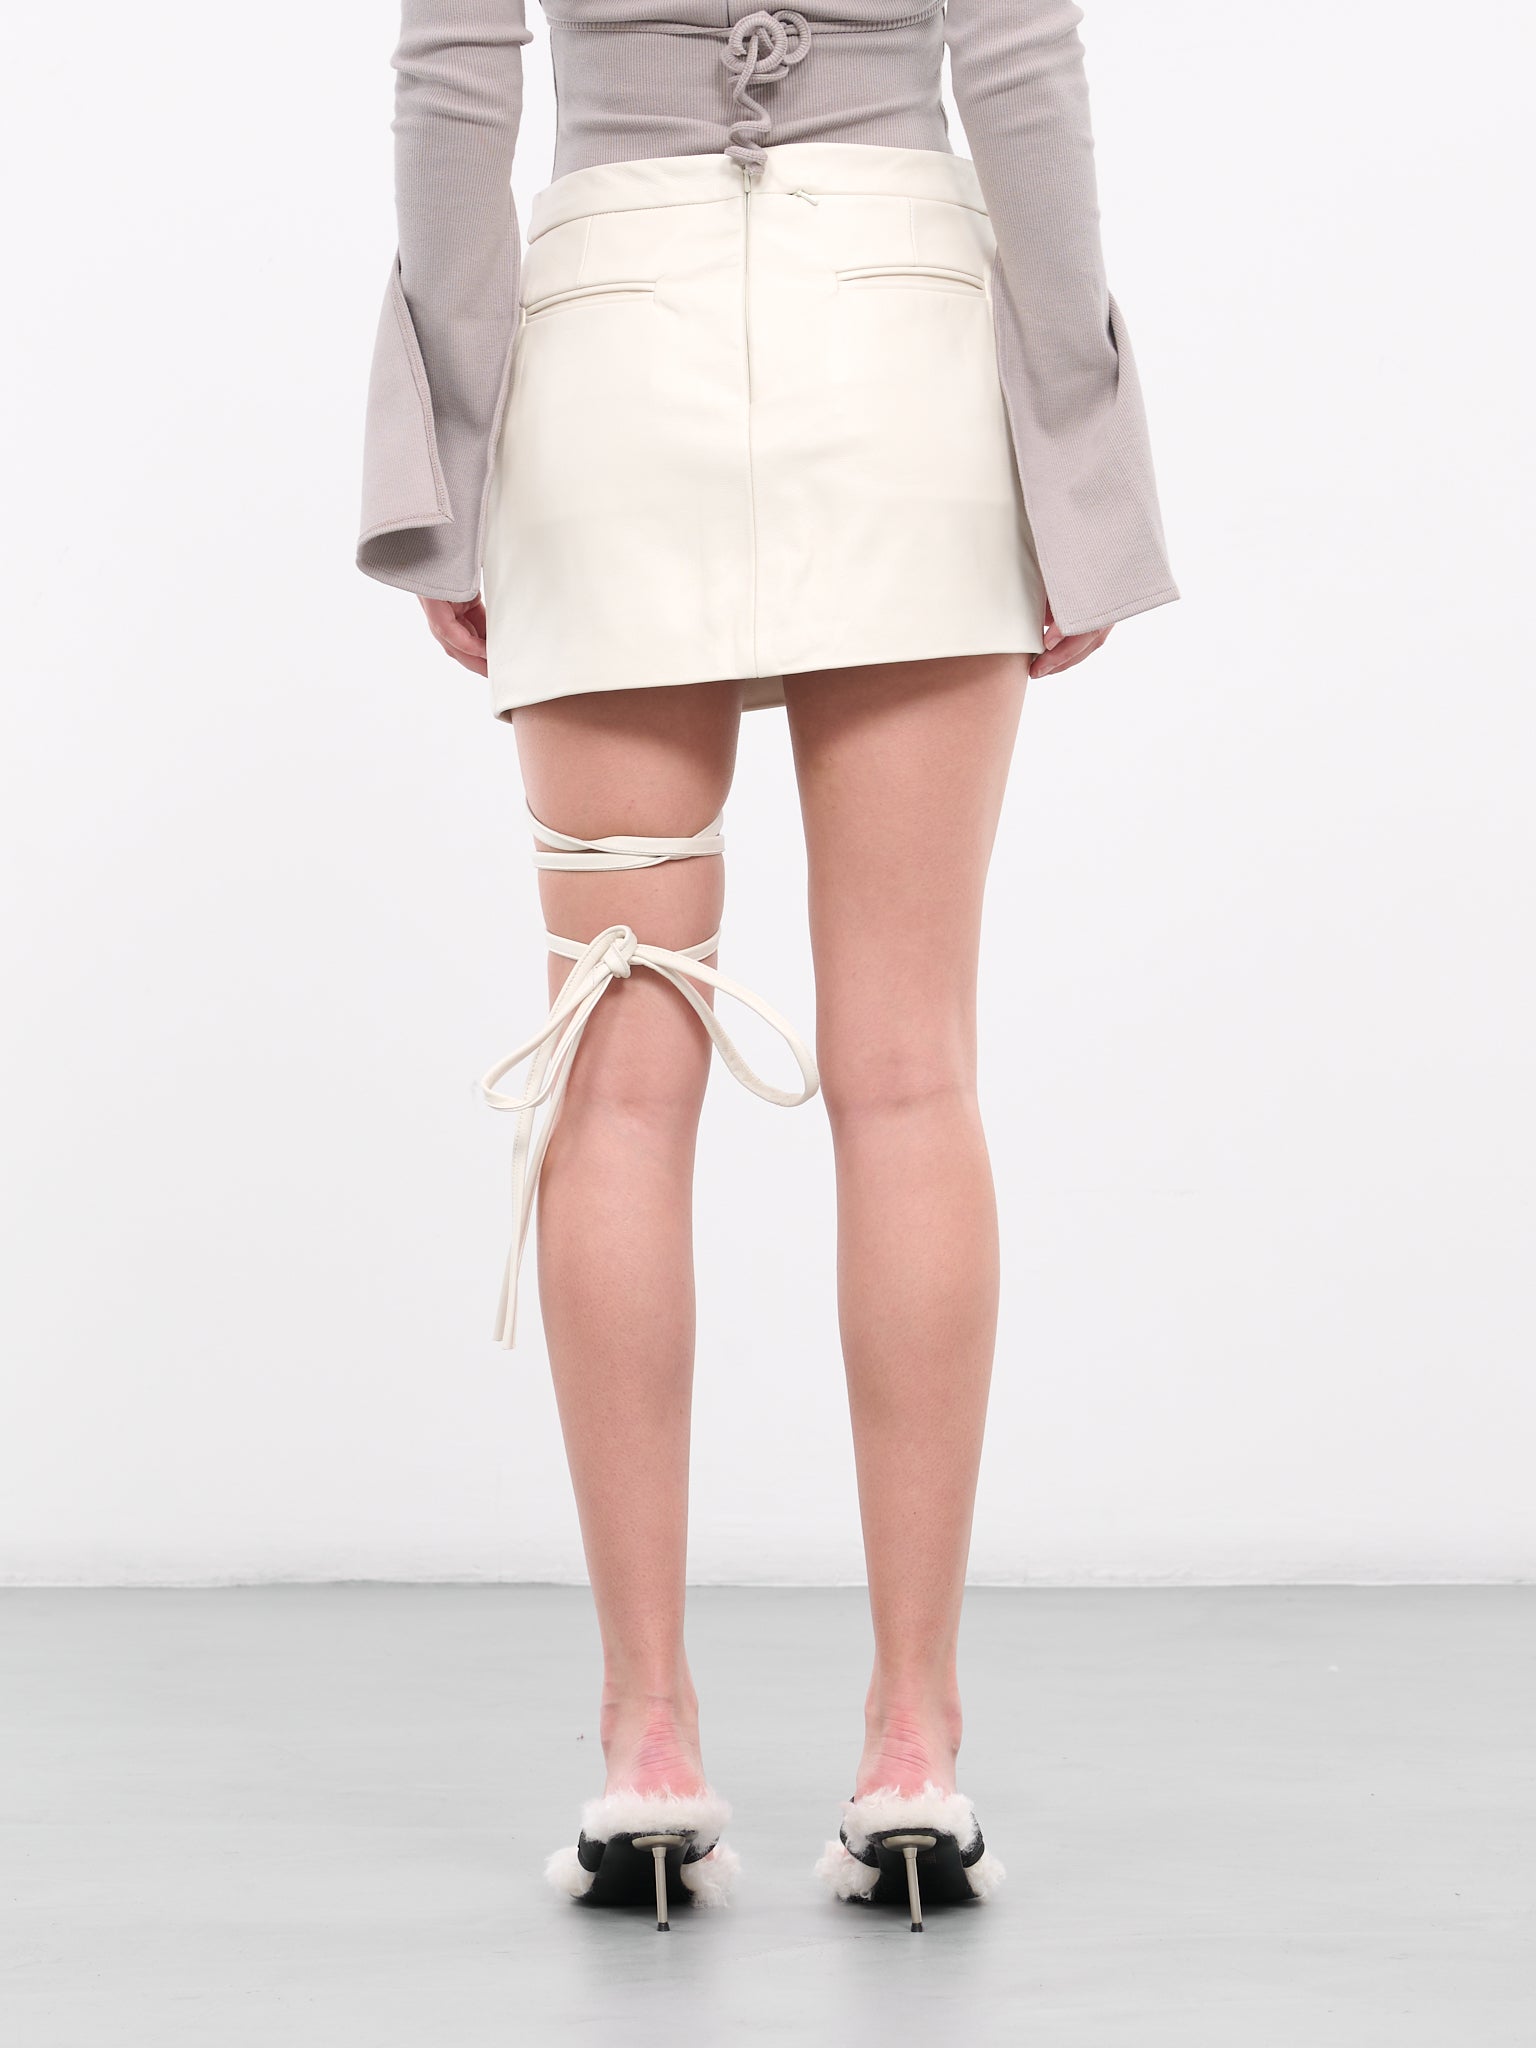 Strap Skirt (700-302-CREAM)